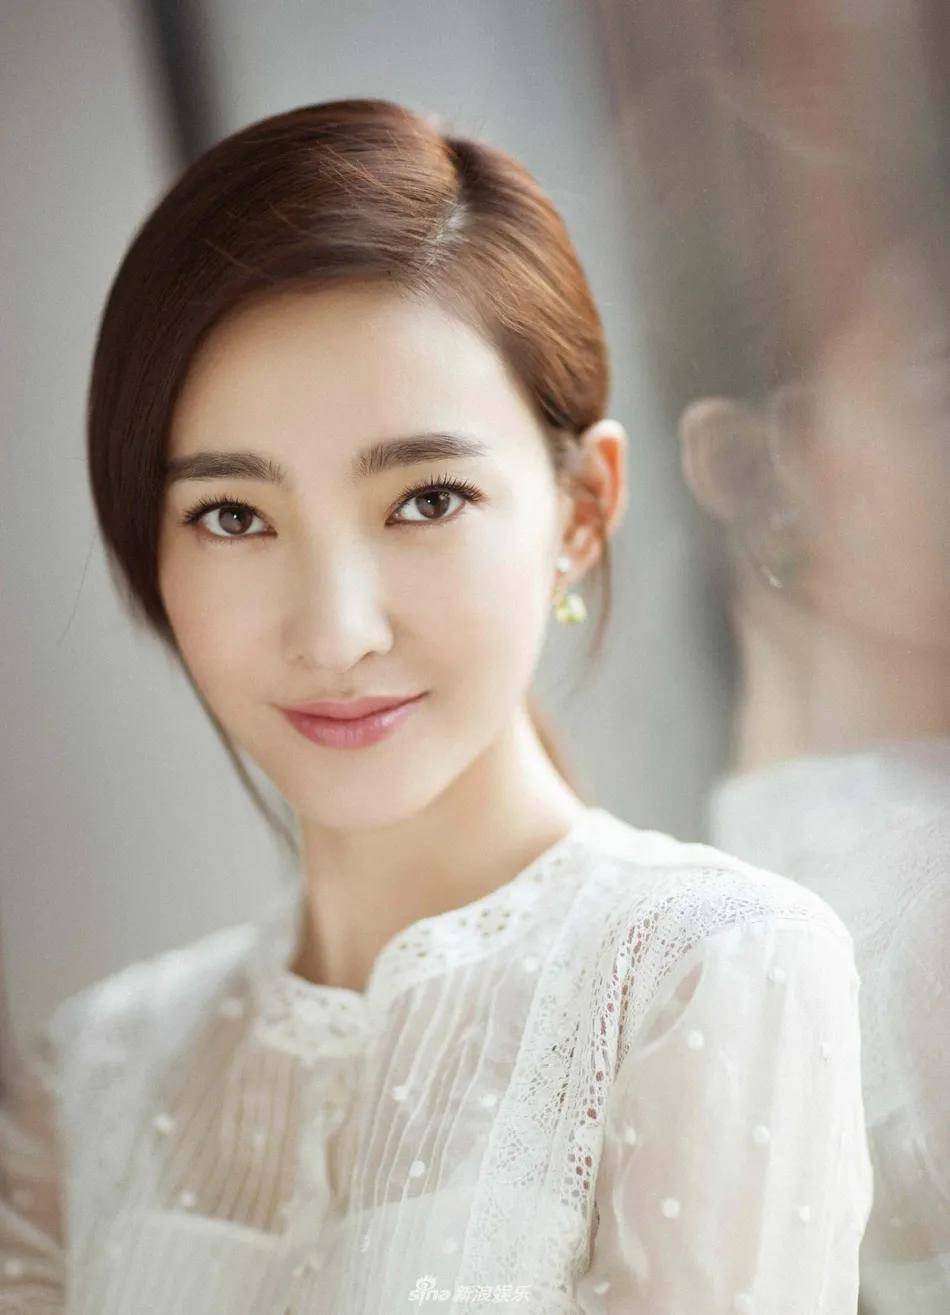 王丽坤,内地女演员,1985年生于内蒙赤峰身高167